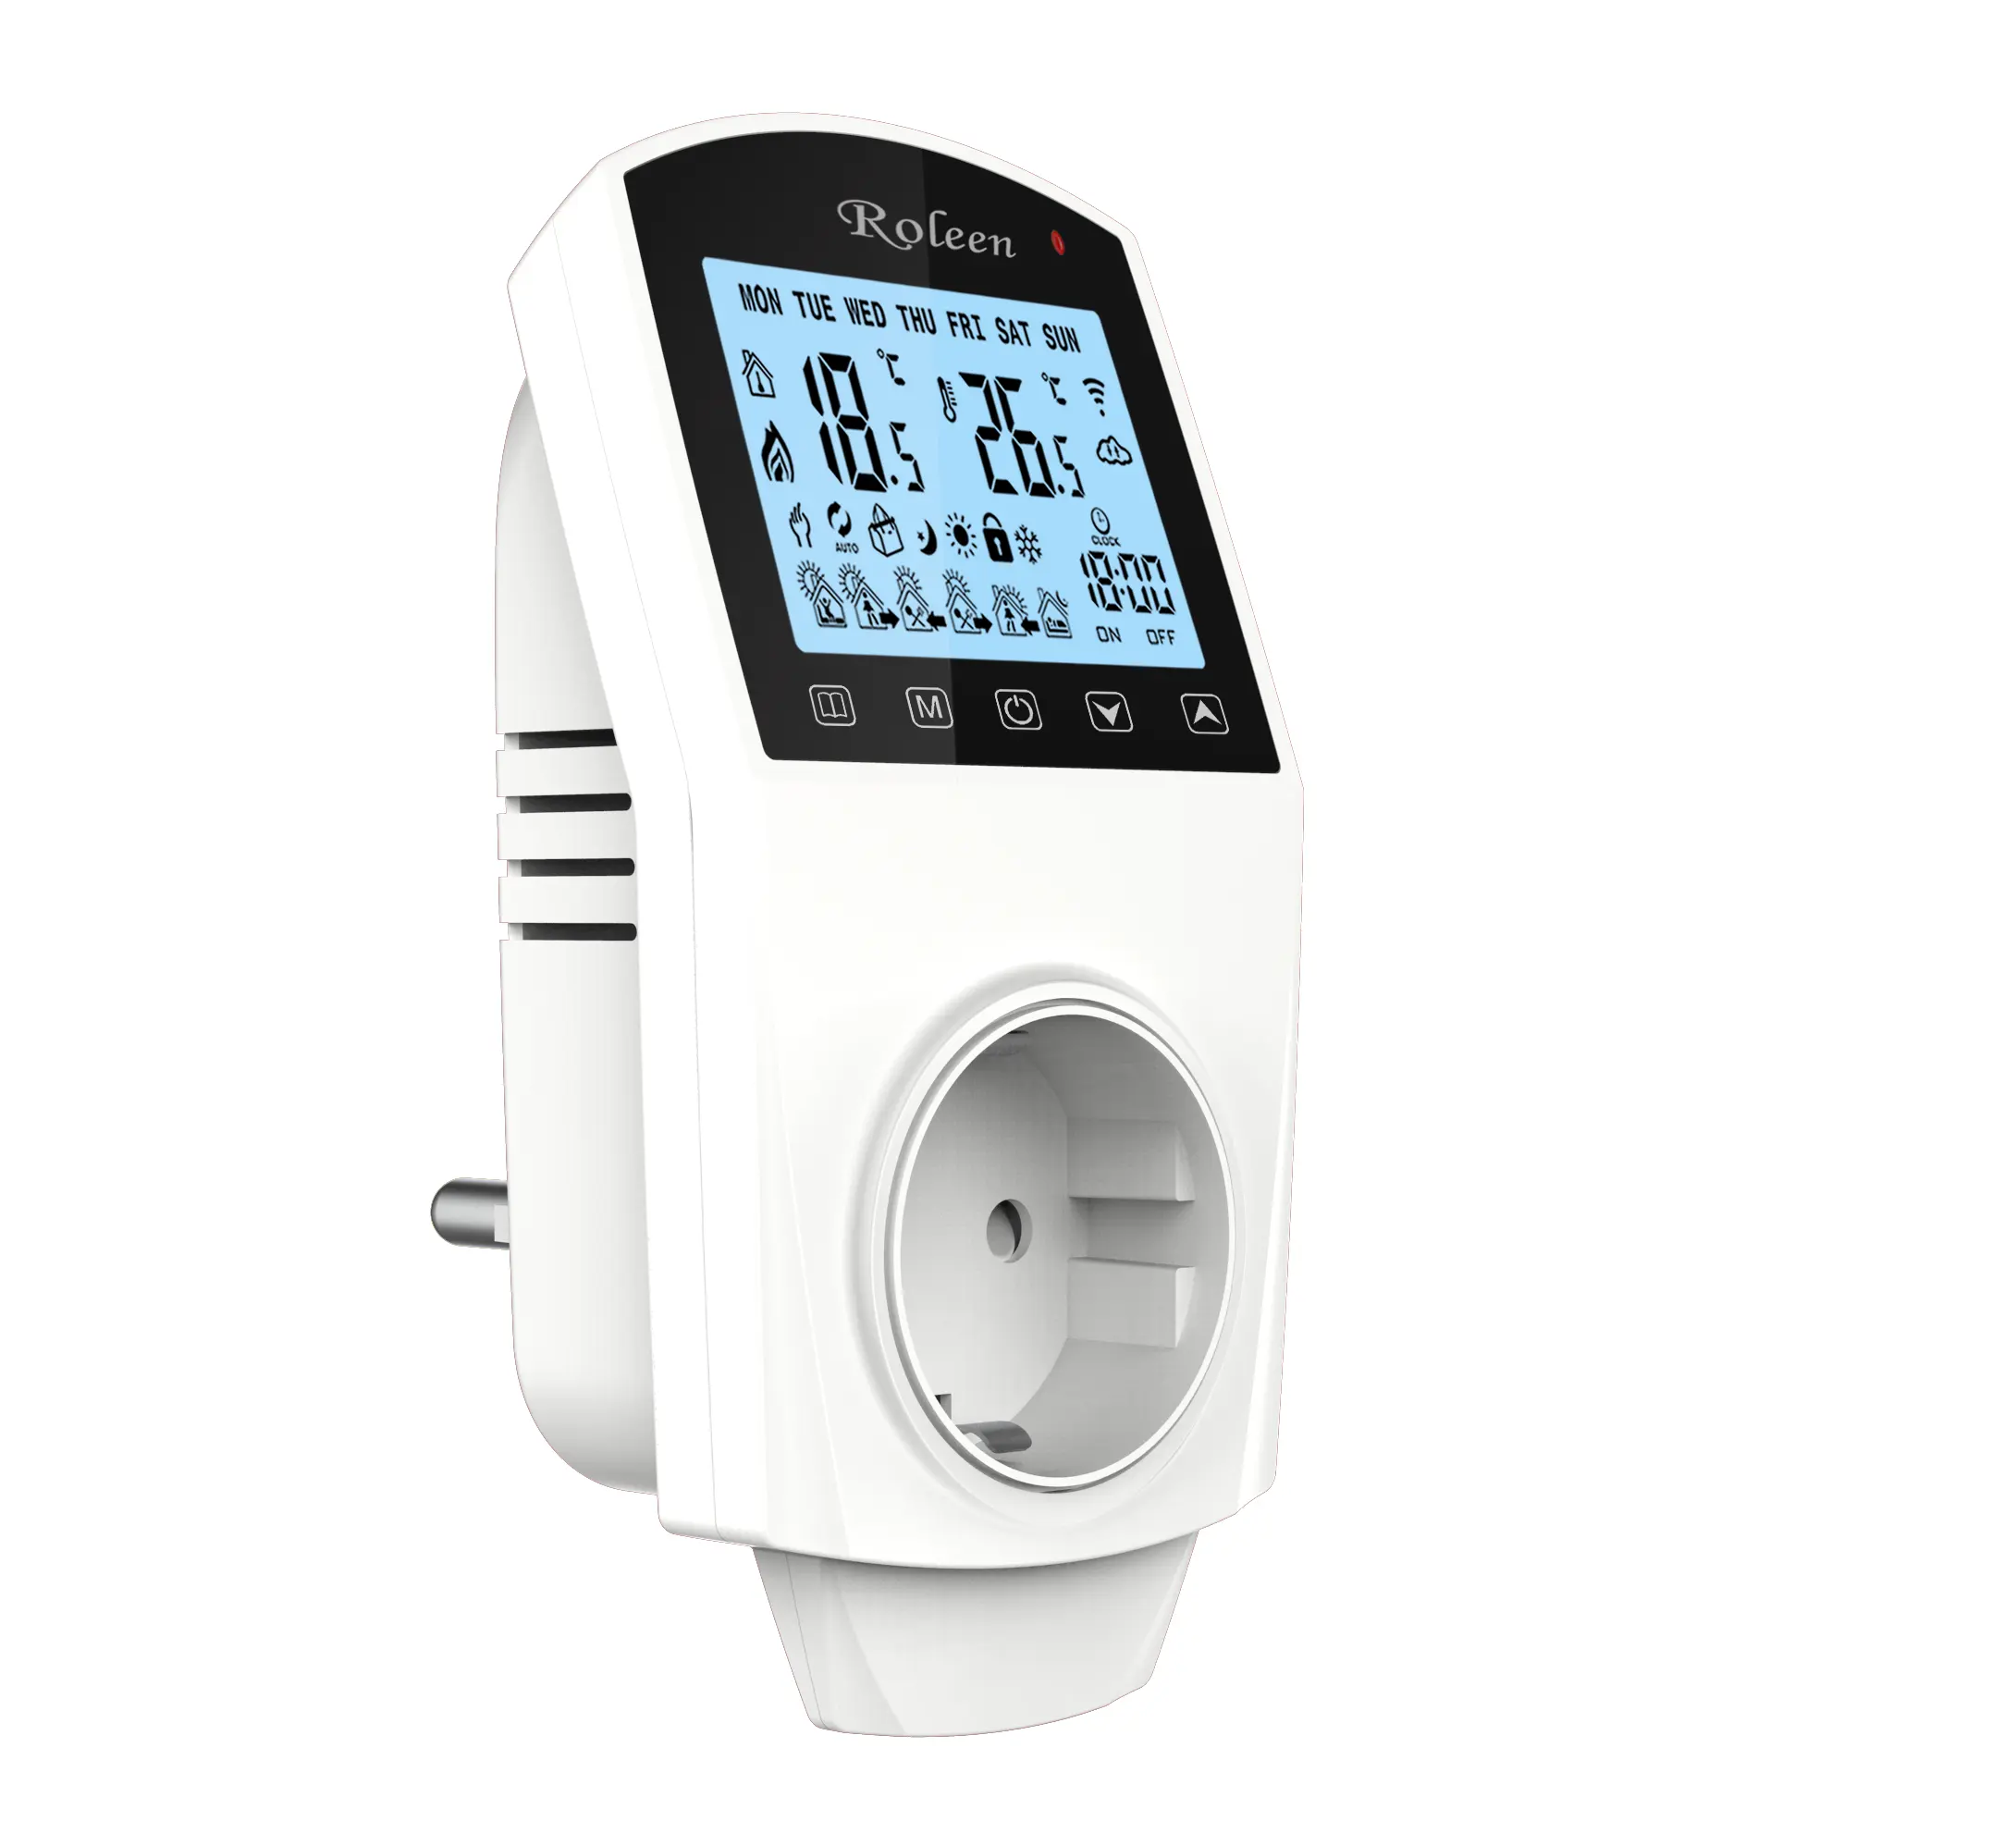 LCD-Anzeige 16A 220V Digitaler Raum thermostat Einstecken Thermostat EU-Buchse für elektrisches Fußboden heizungs system